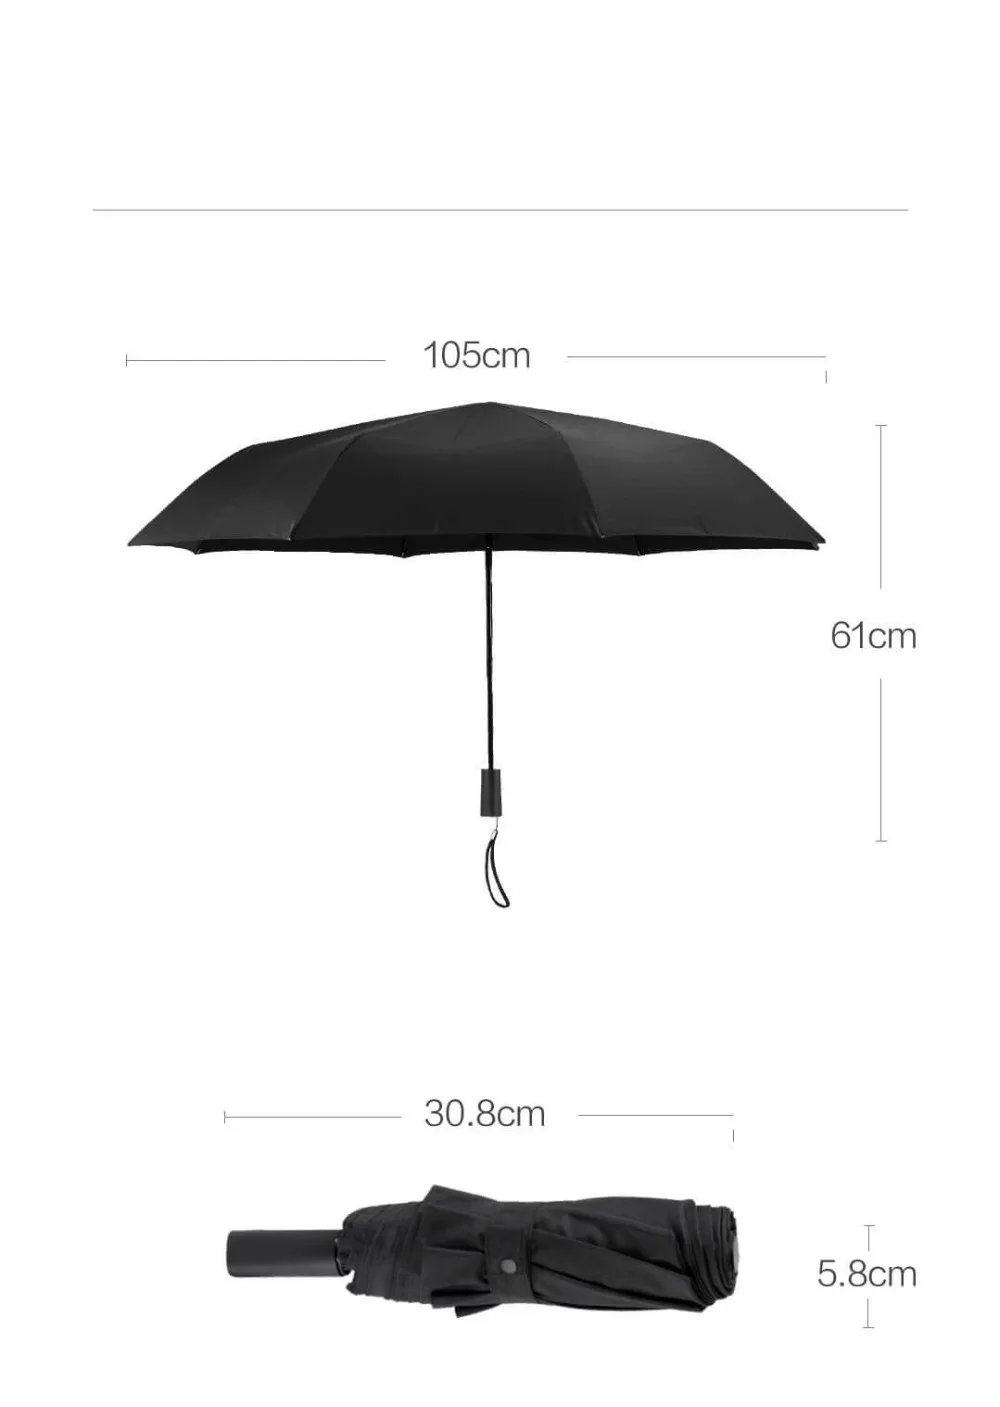 Xiaomi LSD Солнечный зонт складной портативный водоотталкивающий уровень 4 УФ солнцезащитный крем сильный ветер устойчивый три цвета Mijia зонтик